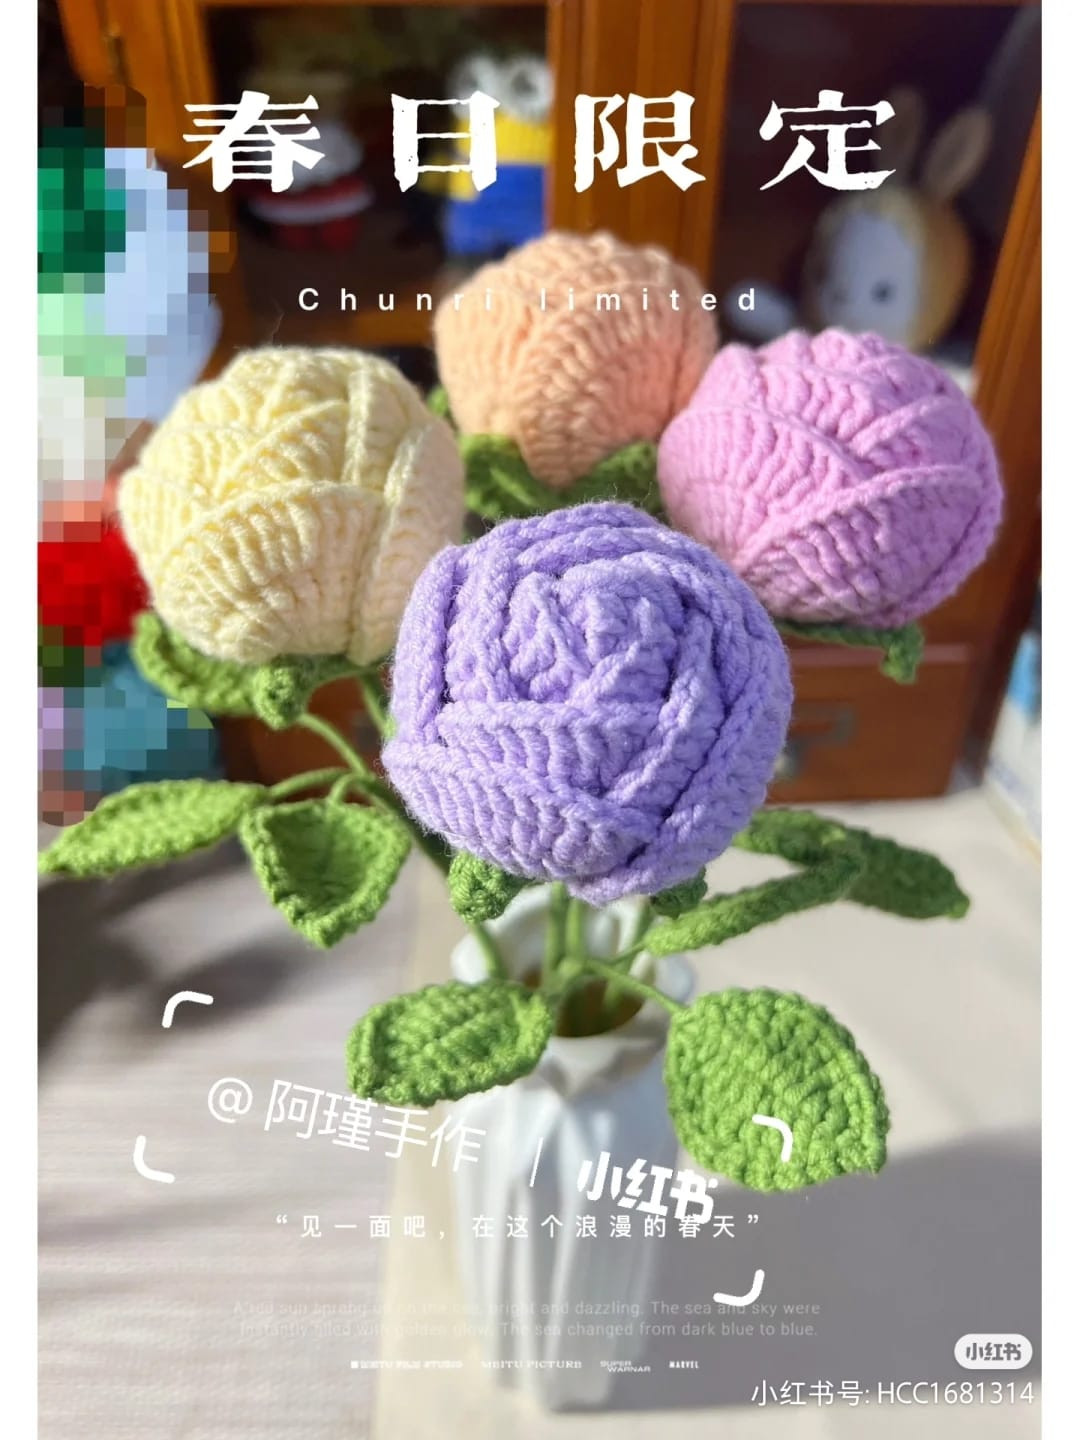 Rose crochet pattern.